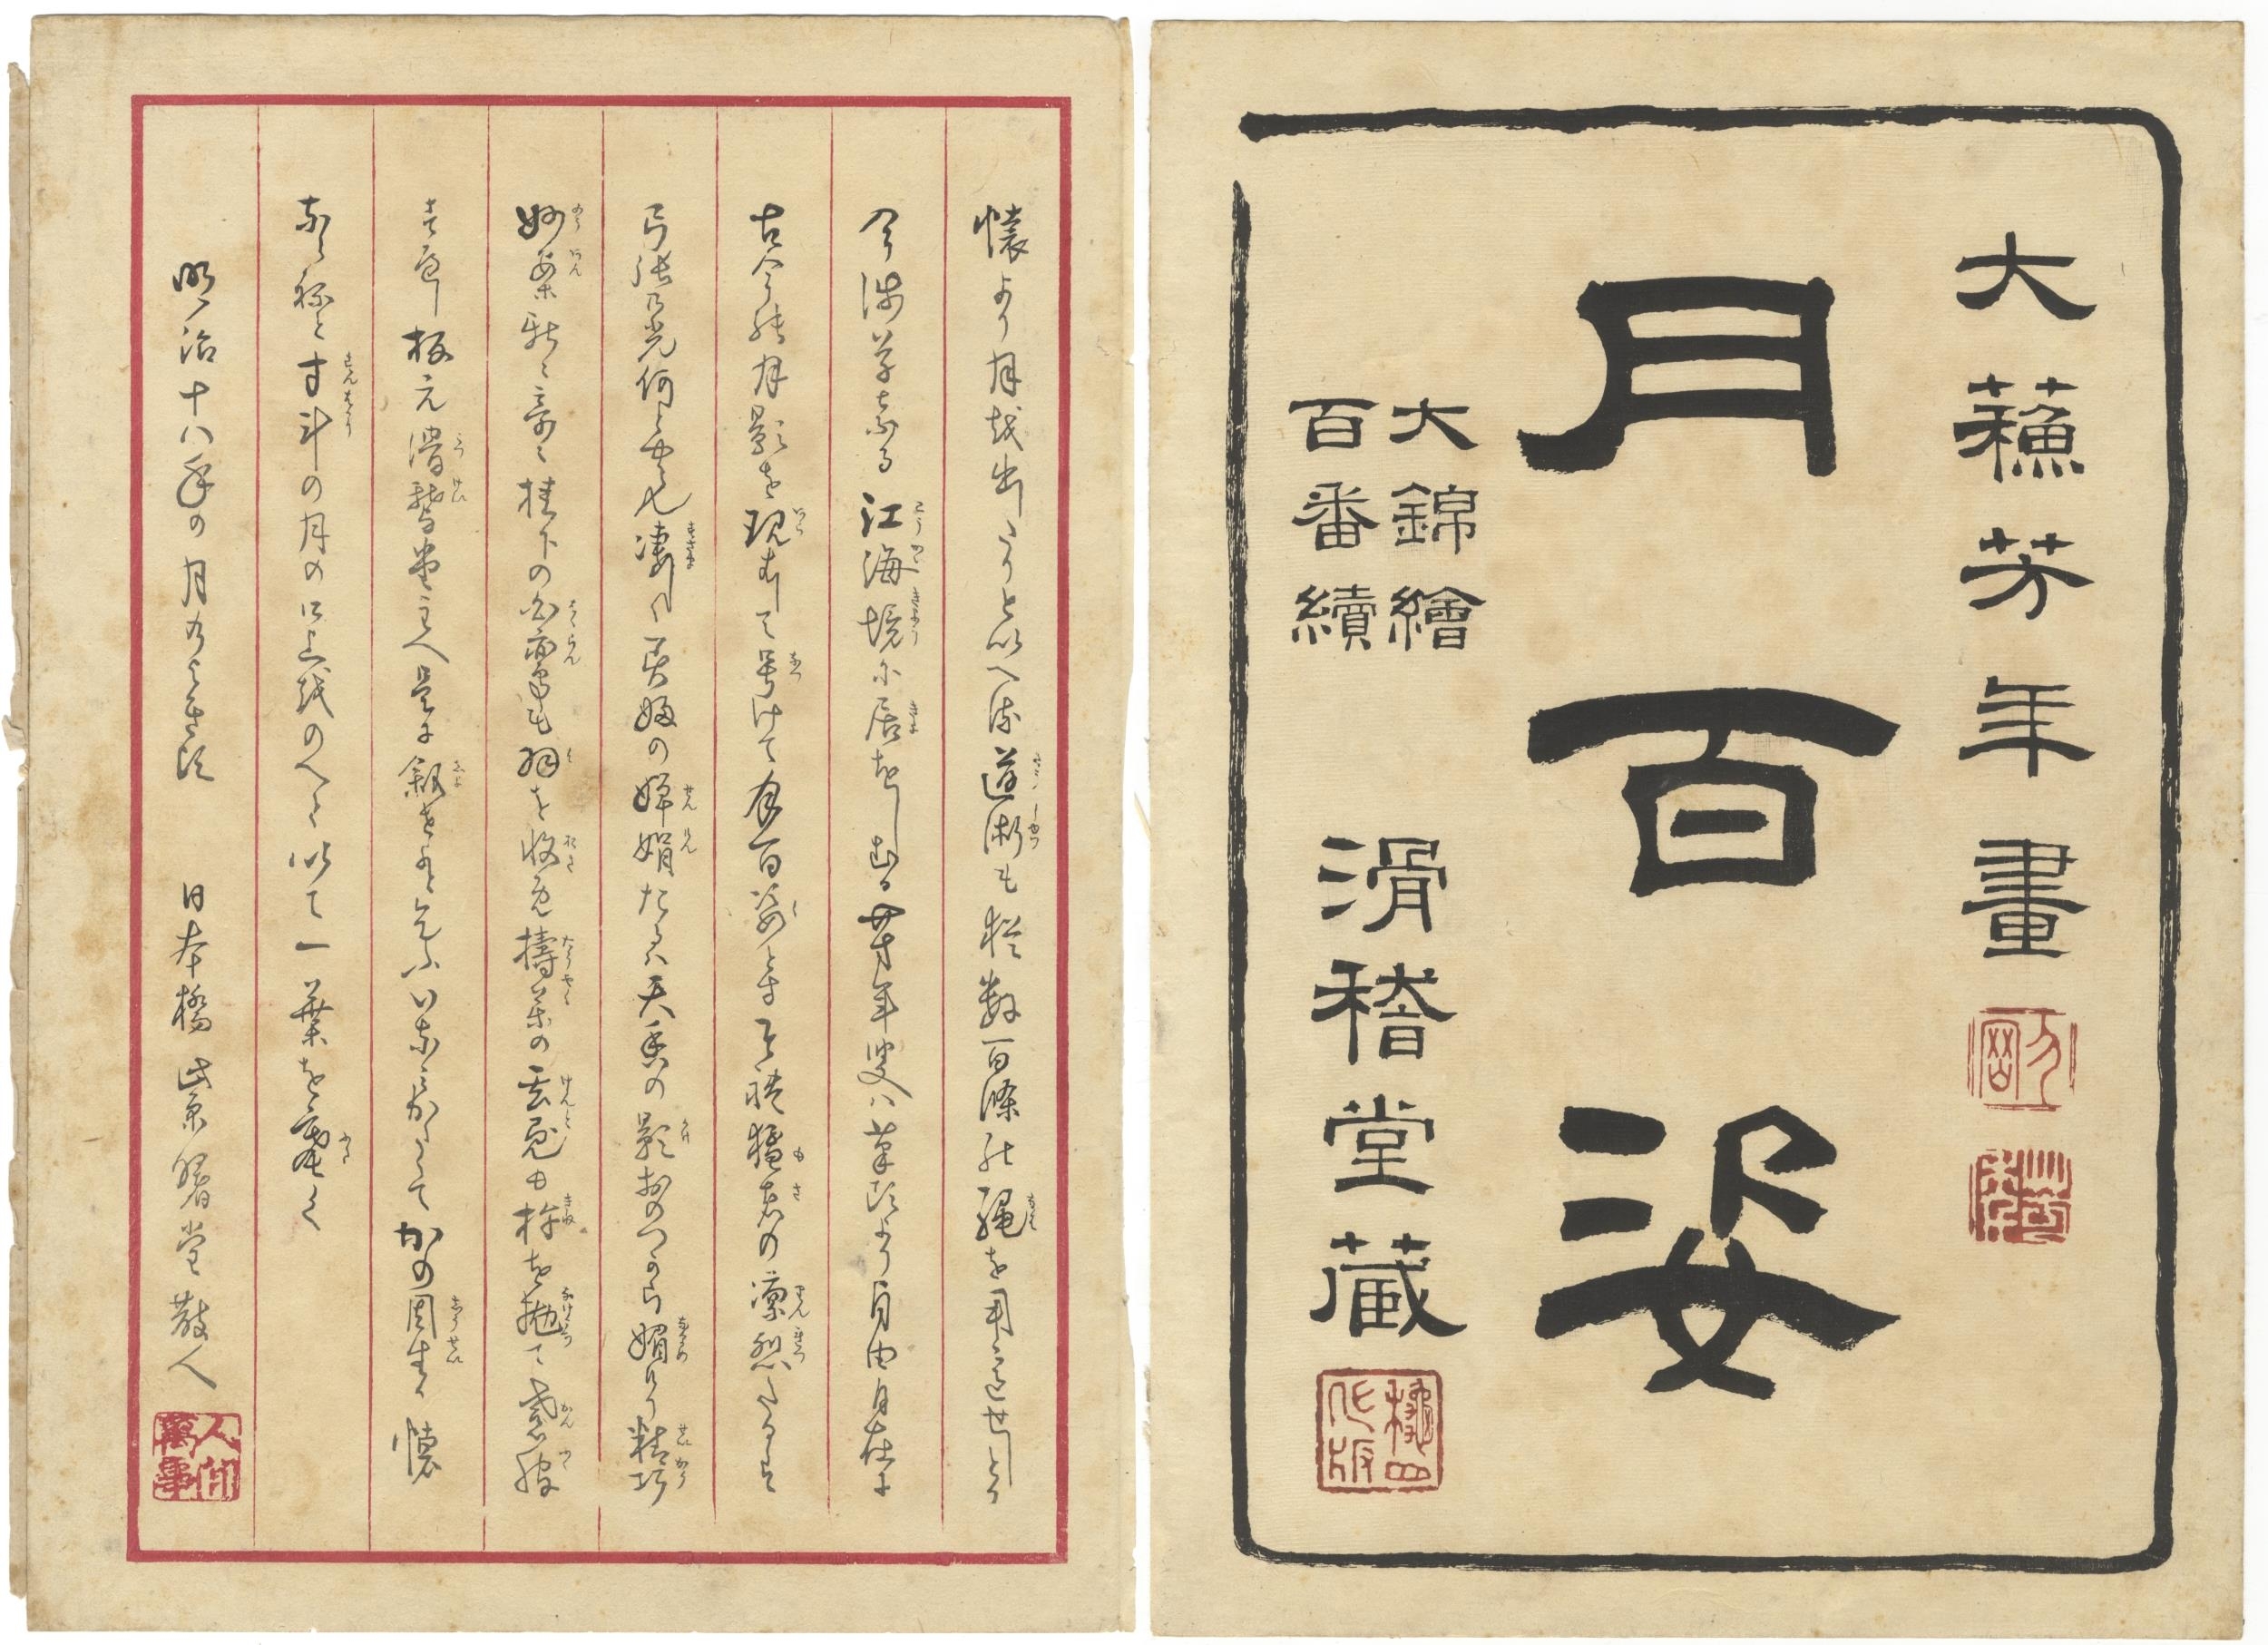 Title Pages by Tsukioka Yoshitoshi, 1885-1892